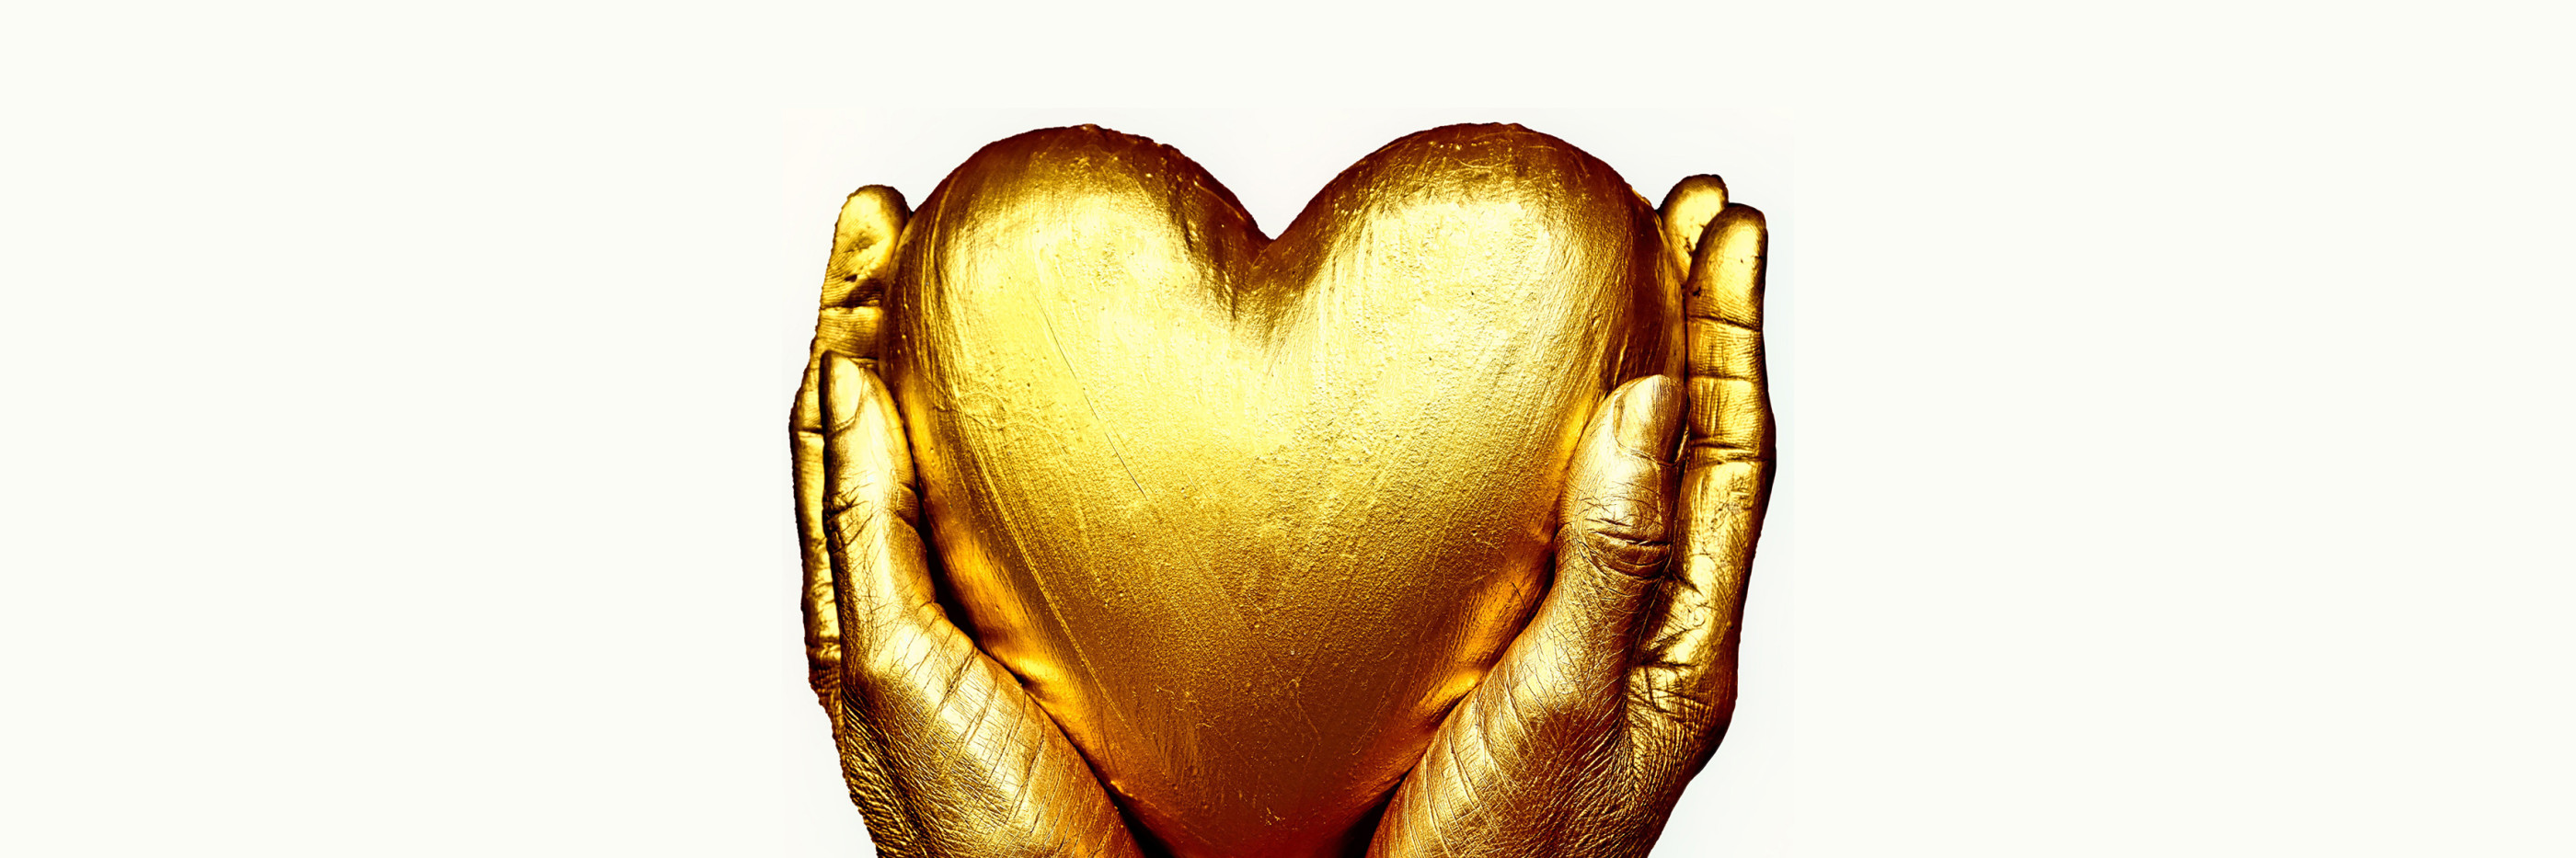 two golden hands holding a golden heart